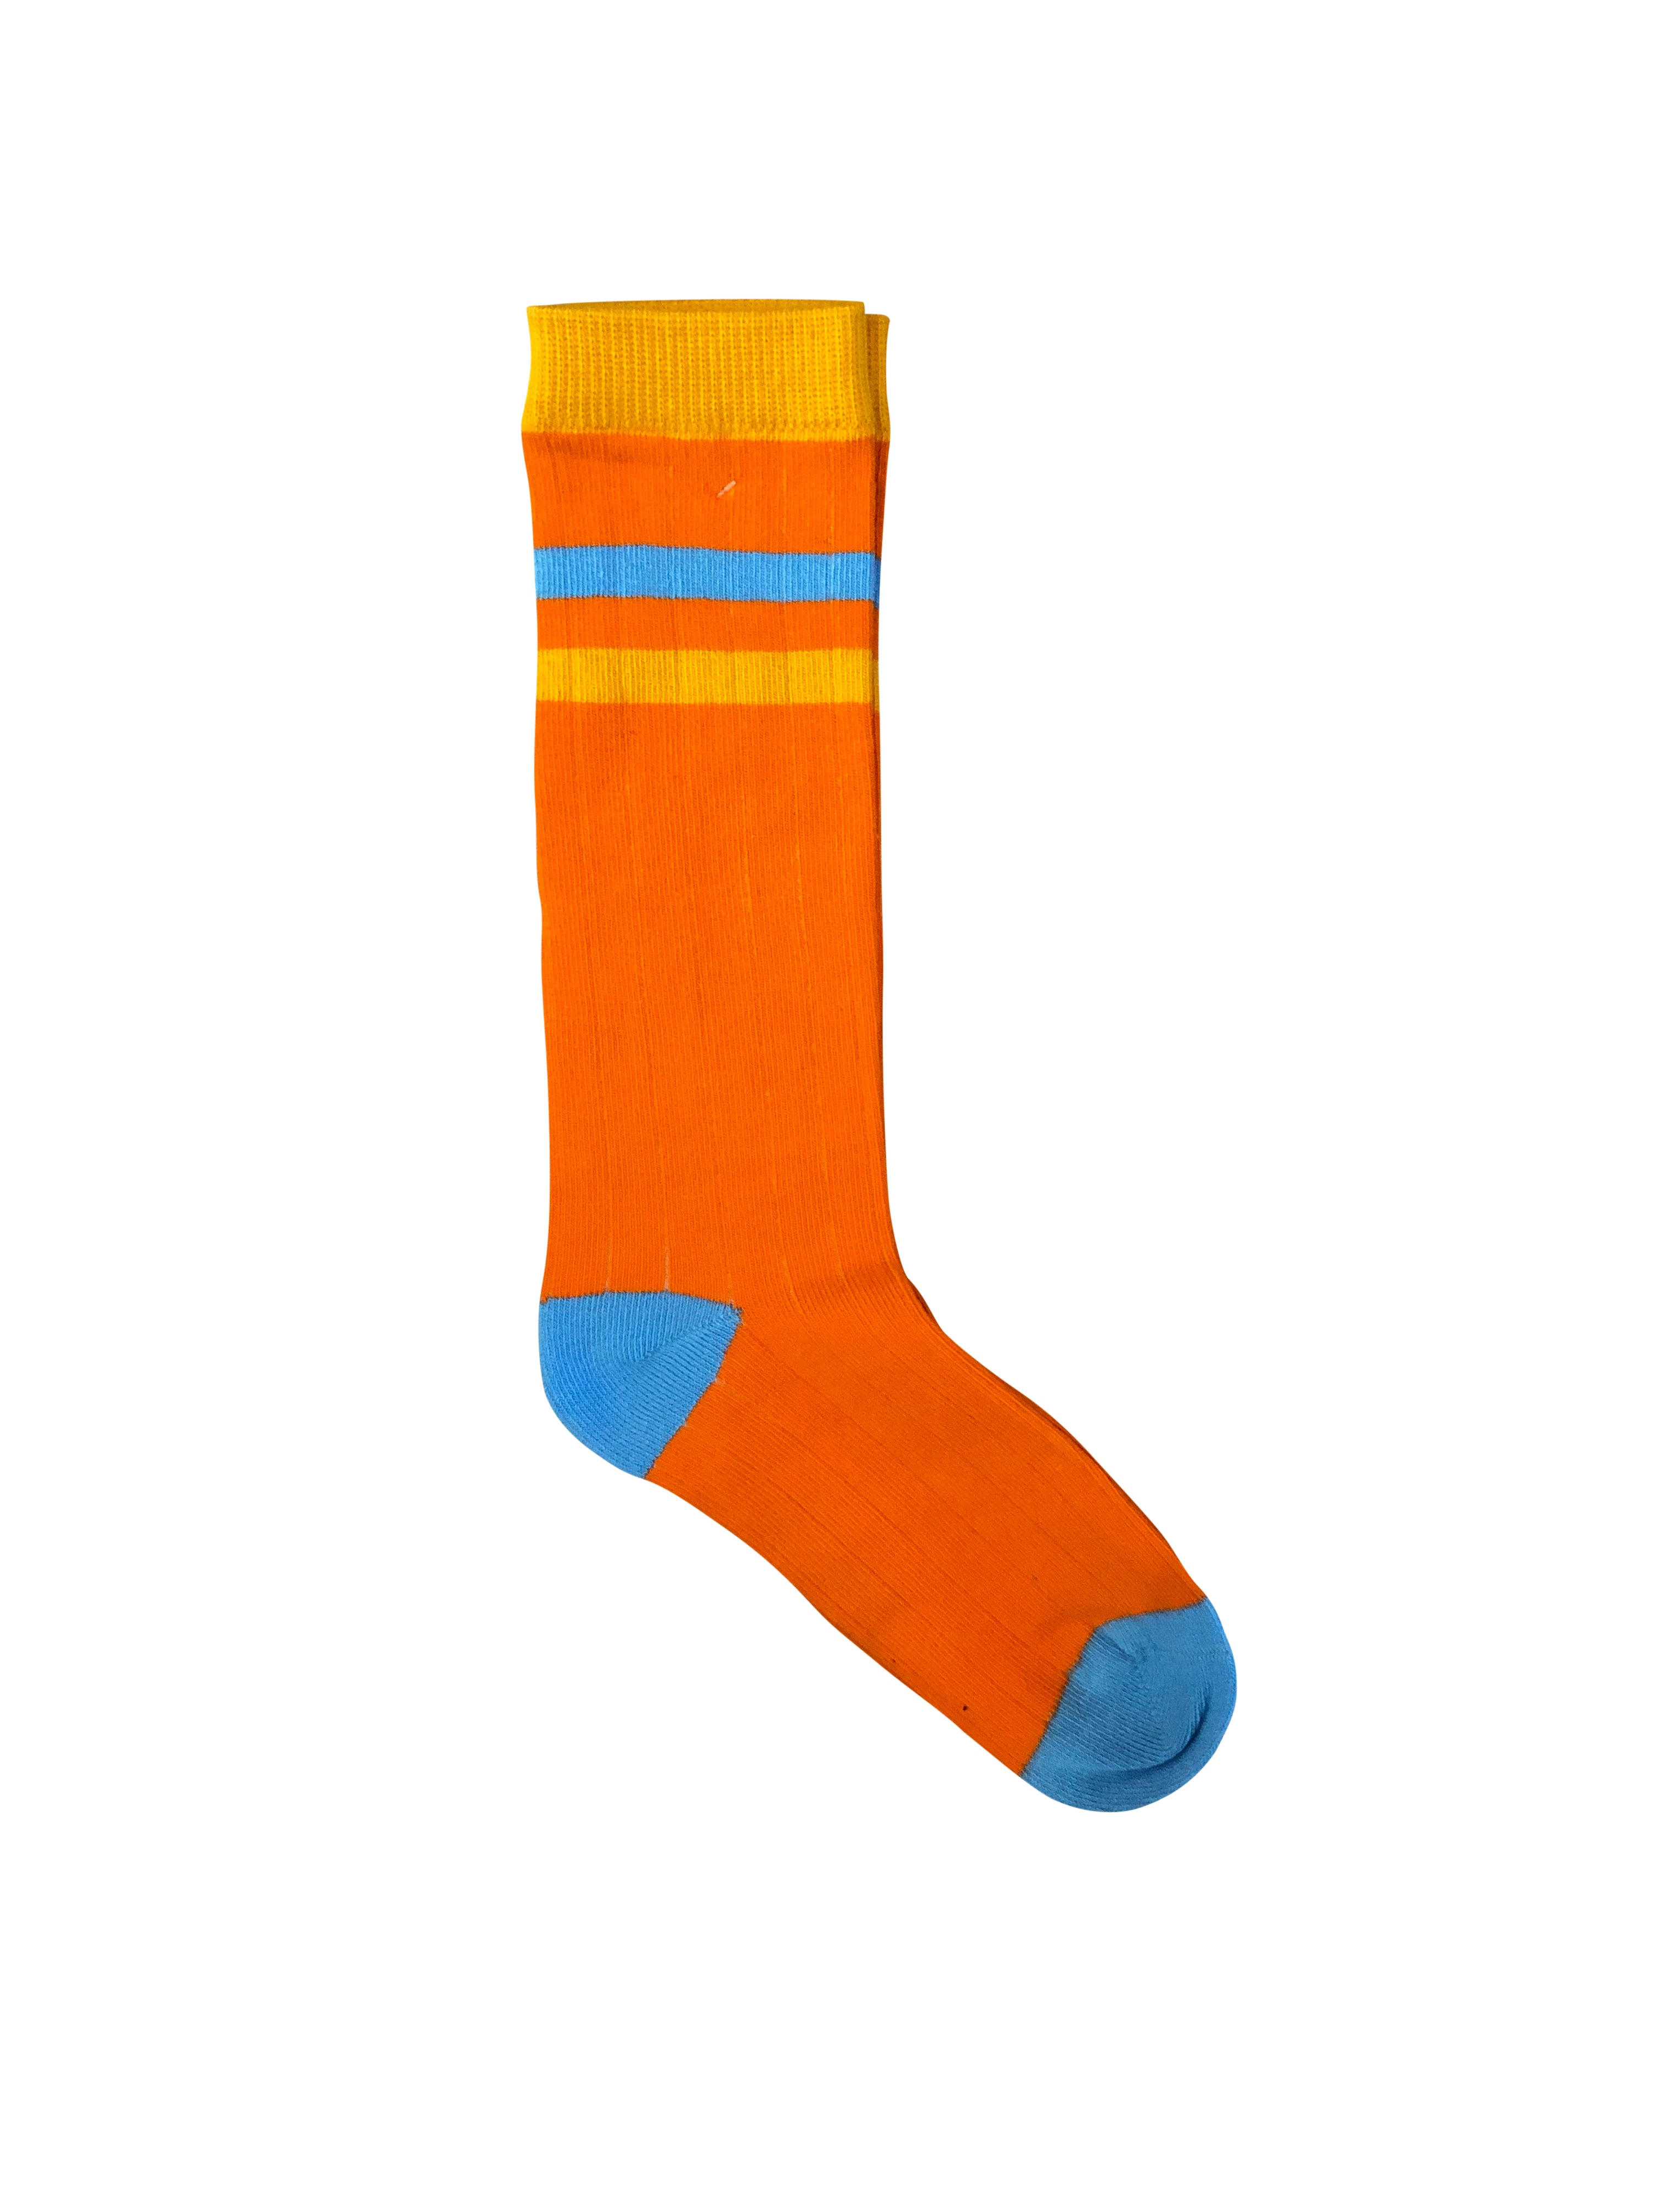 Moromini - Ribbed Tube Socks - Orange